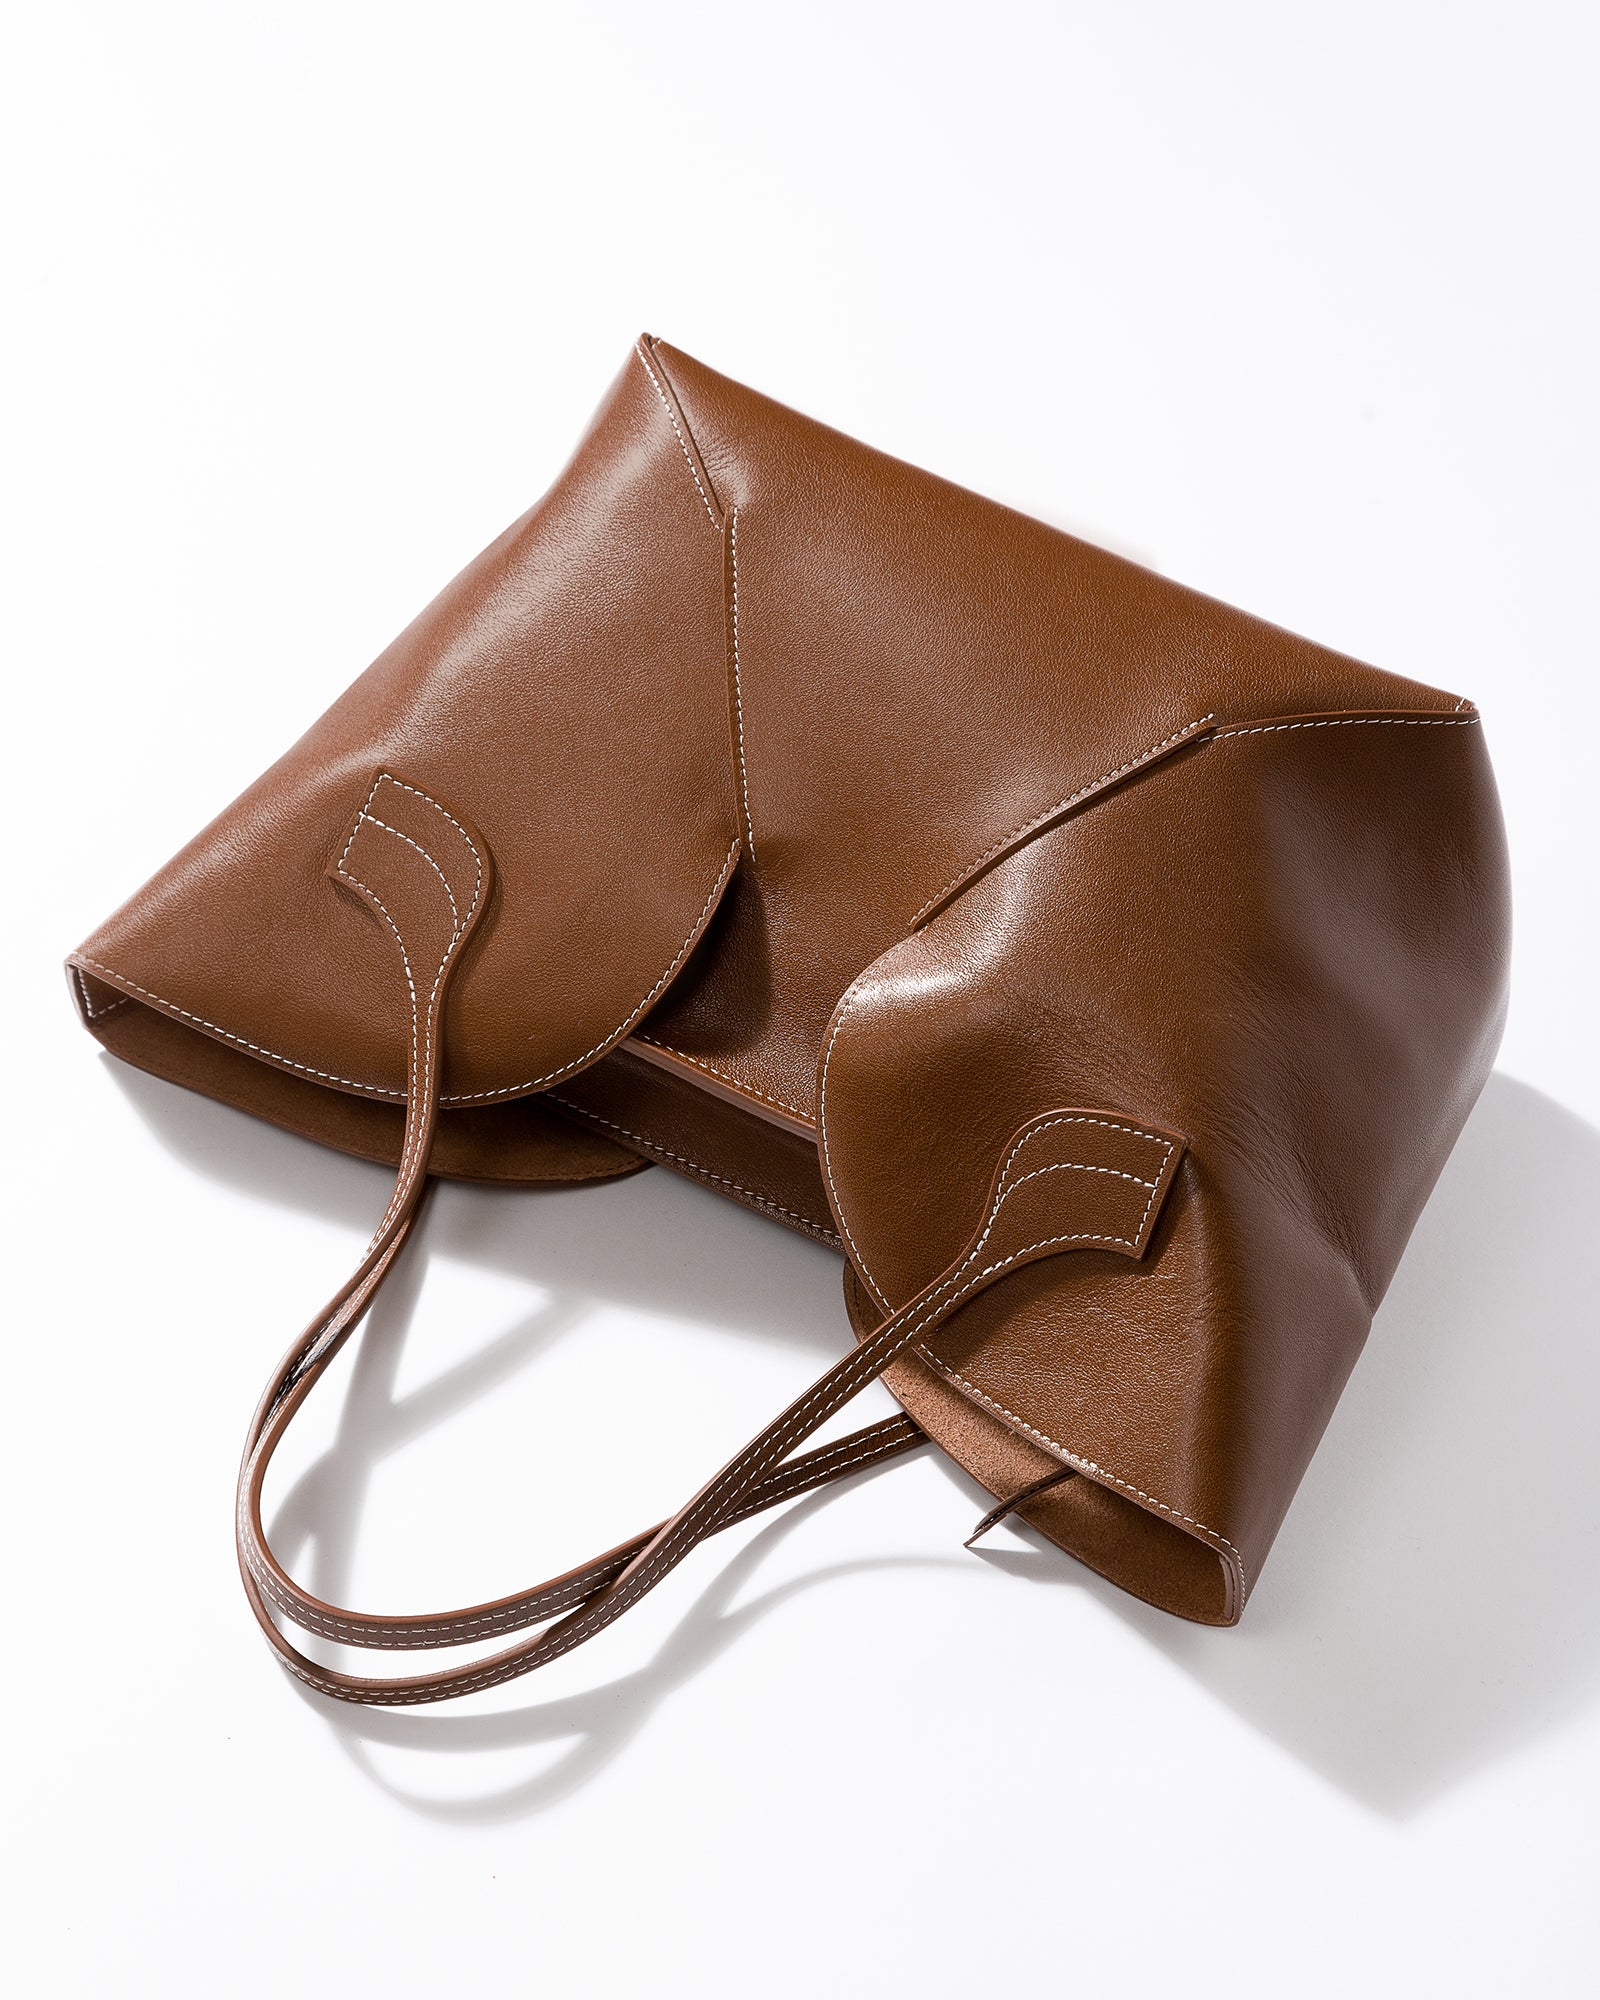 HEREU Sinia Woven Leather Shoulder Bag